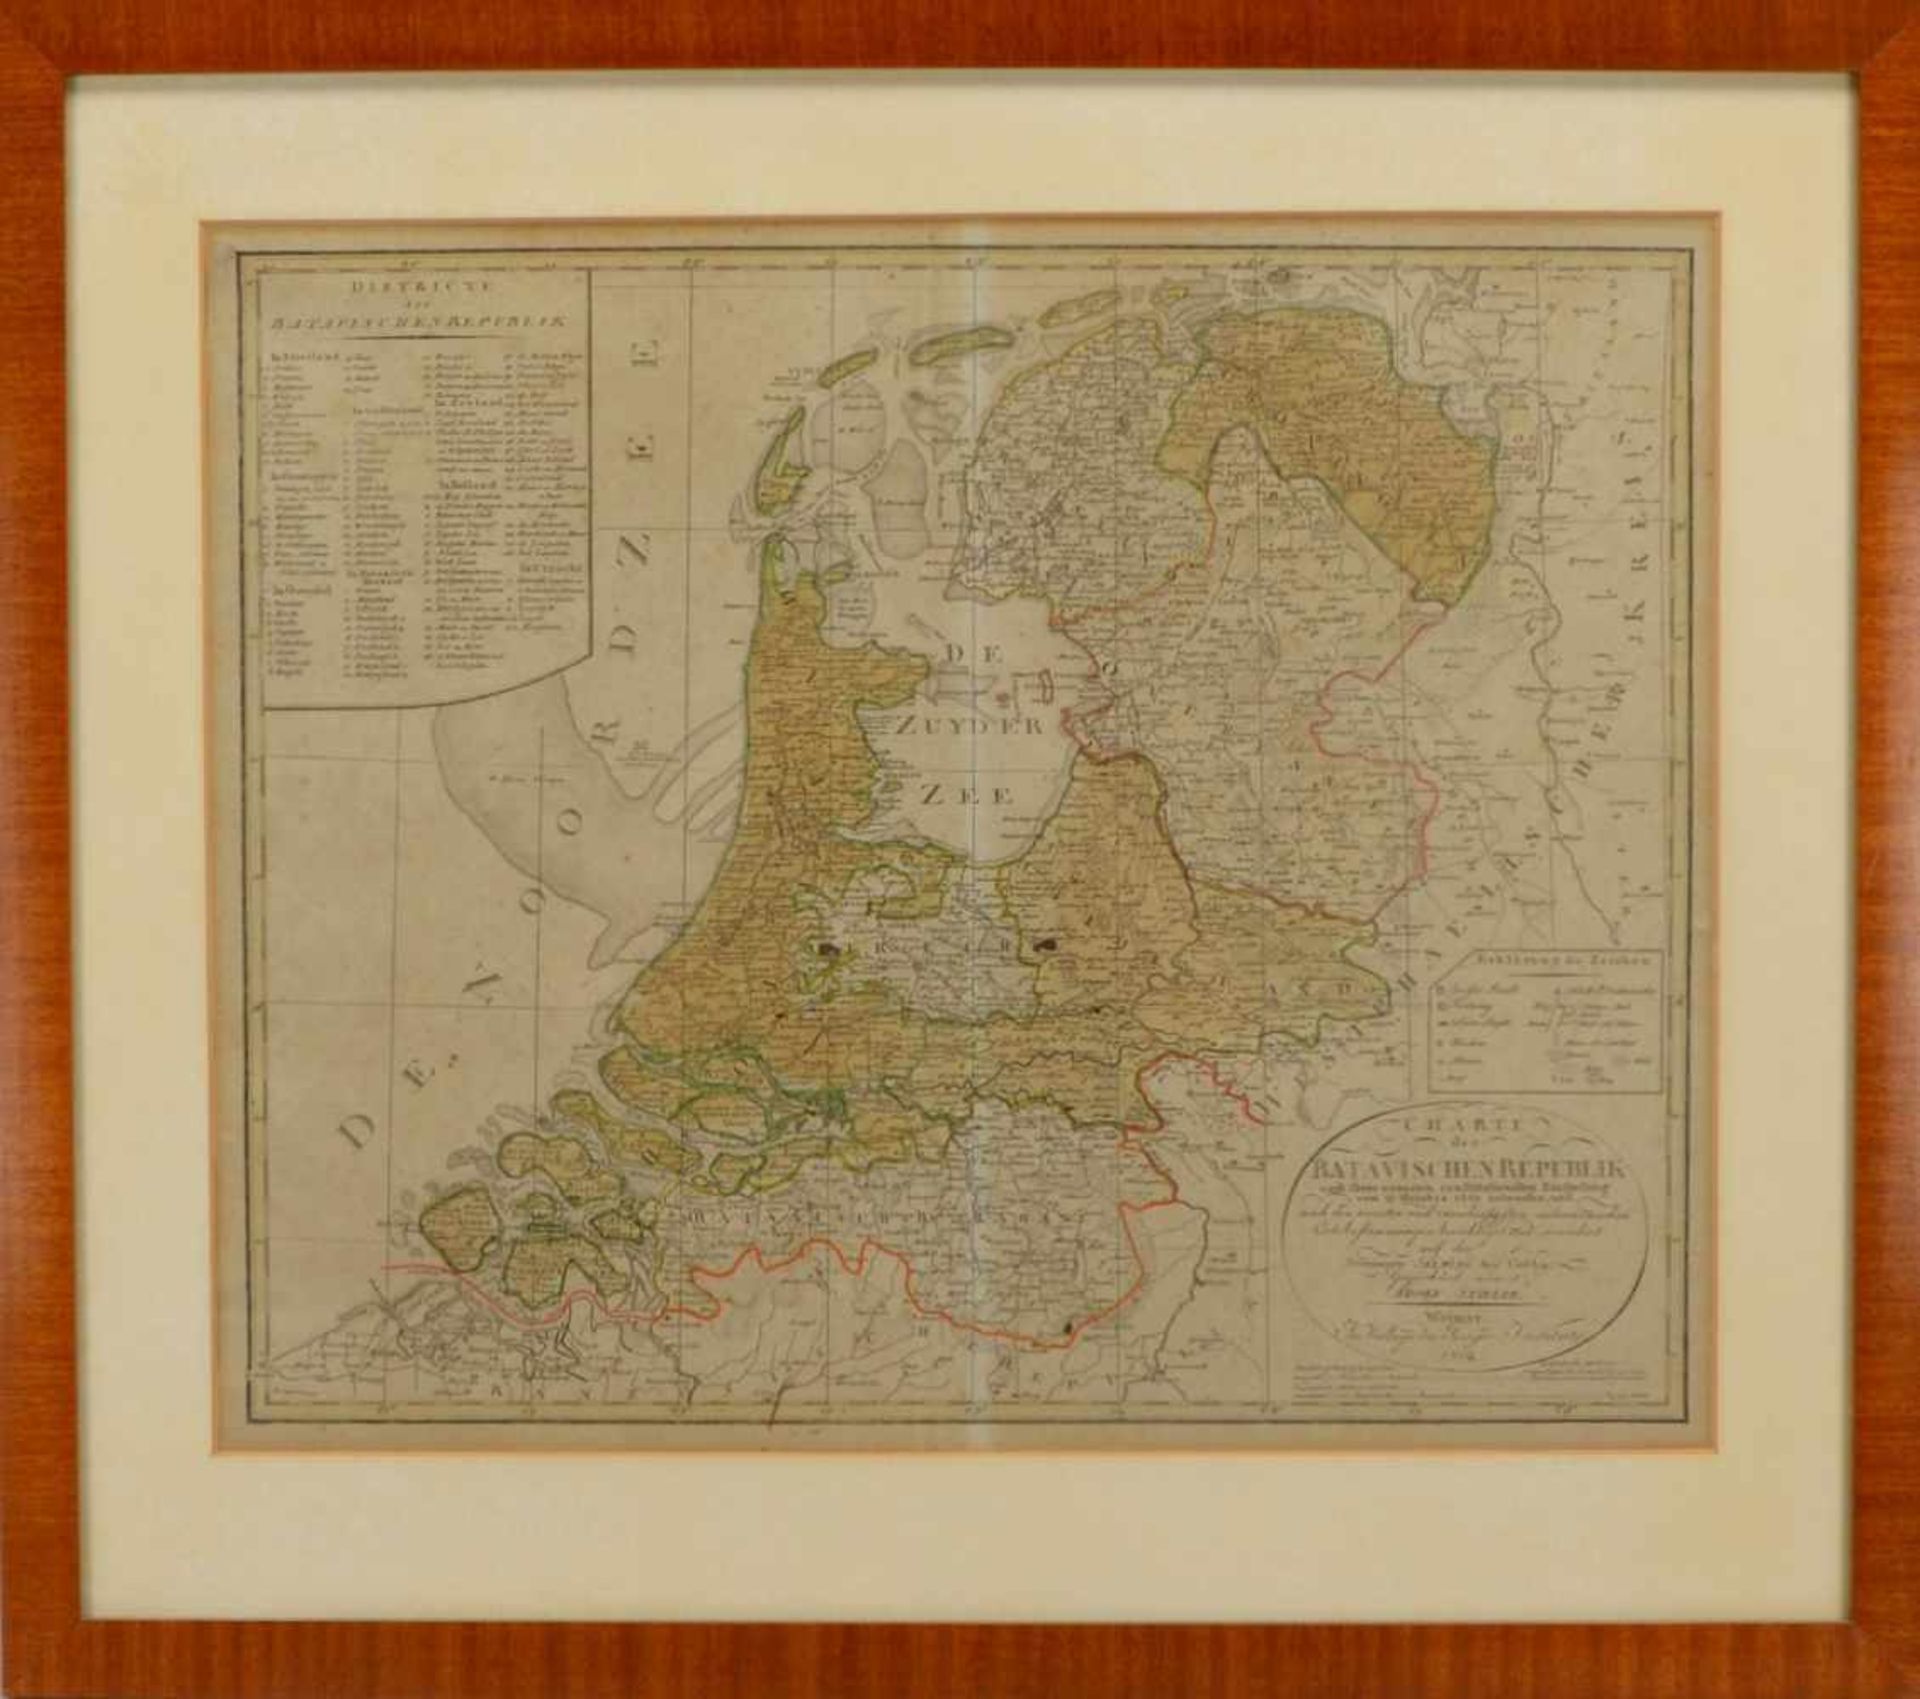 Alte Landkarte, 'Batavische Republik', Kupferstich/grenzkoloriert (gezeichnet von Adolf Stieler,